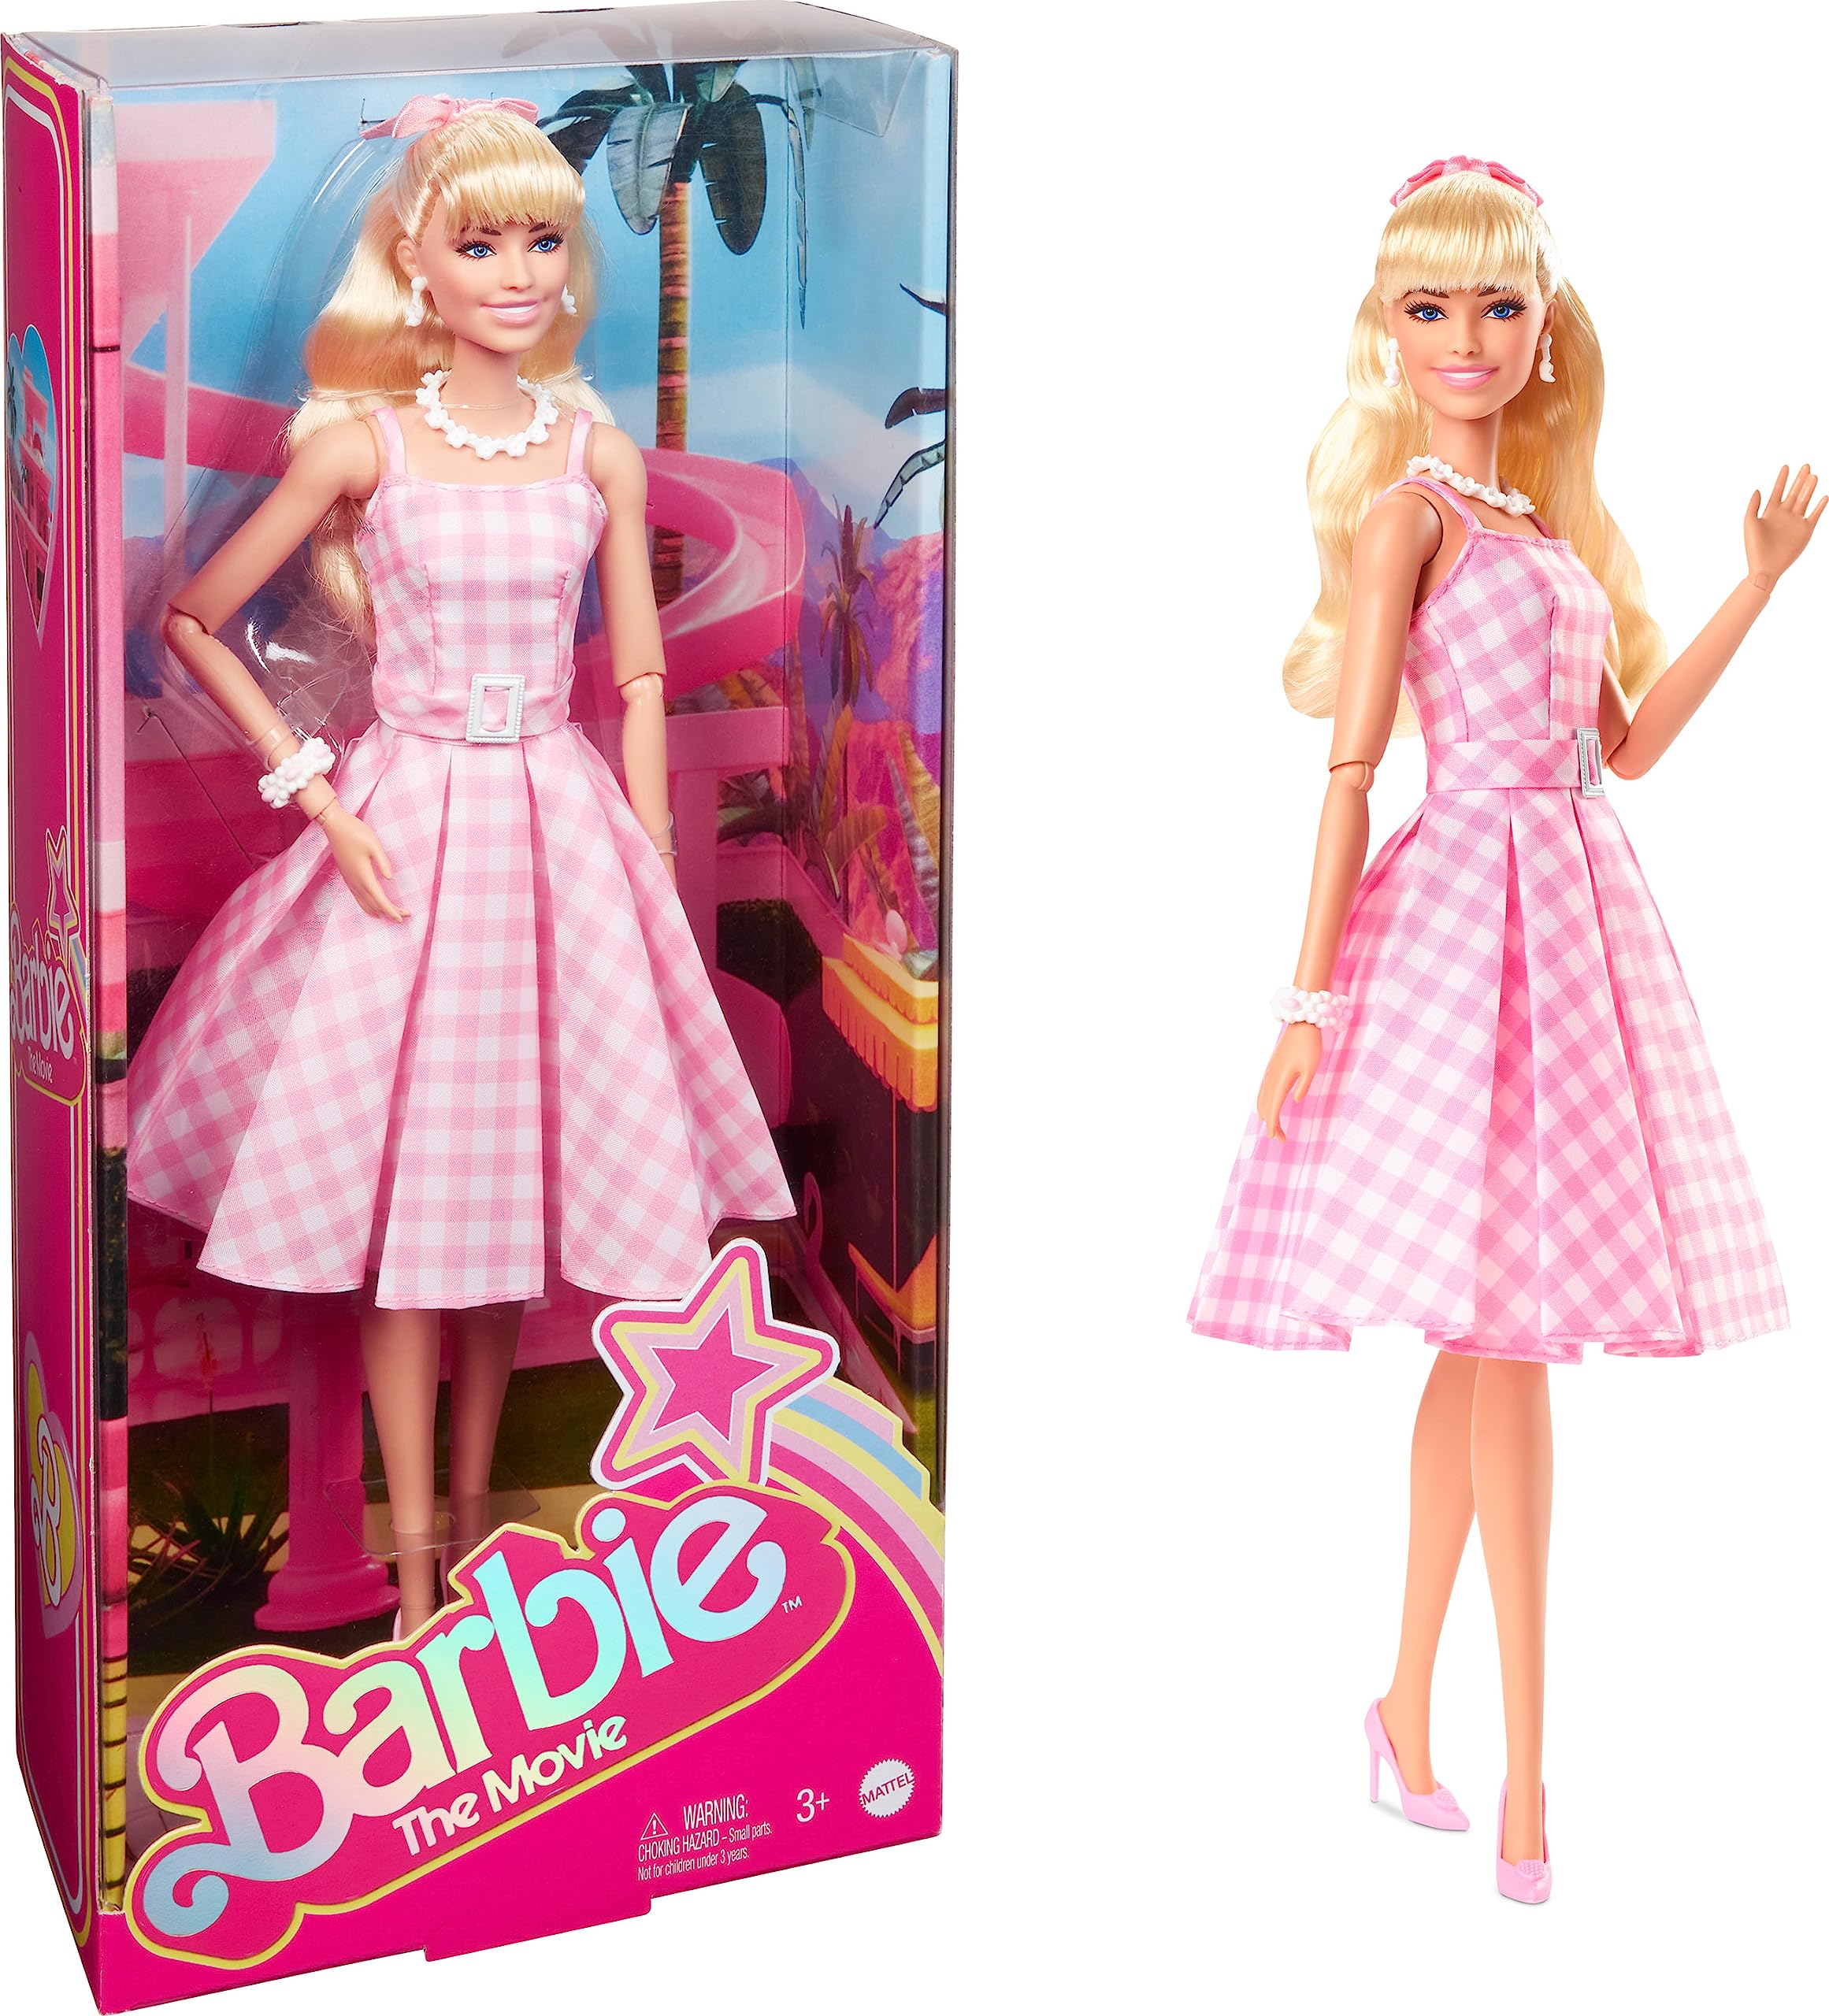 Barbie La muñeca de la película, Margot Robbie como Barbie, muñeca coleccionable con vestido de guinga rosa y blanco con collar de cadena de margaritas